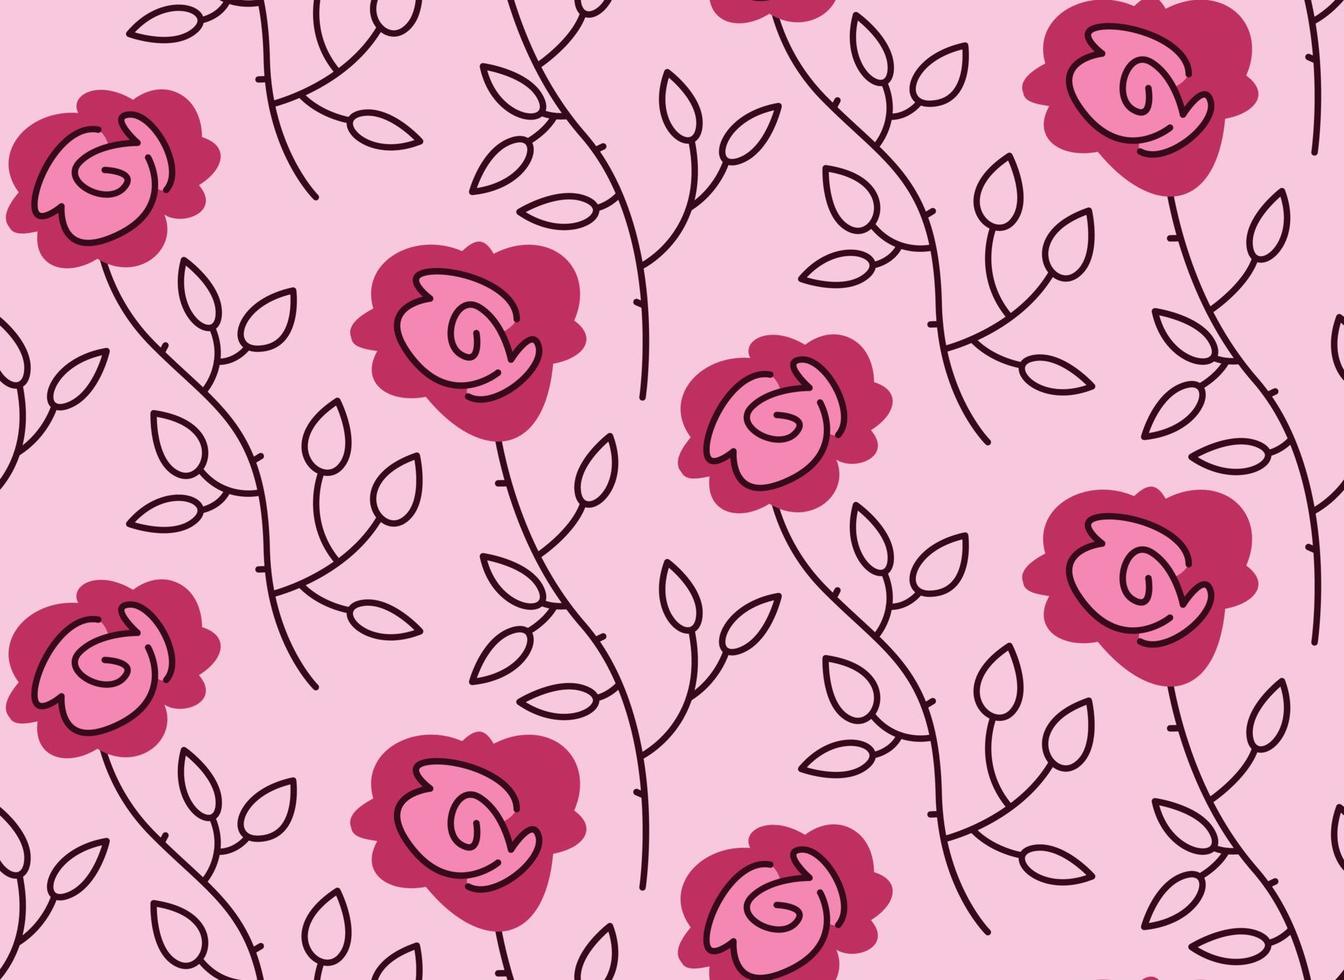 padrão sem emenda com rosas. textura de flor bonita no estilo doodle. vetor